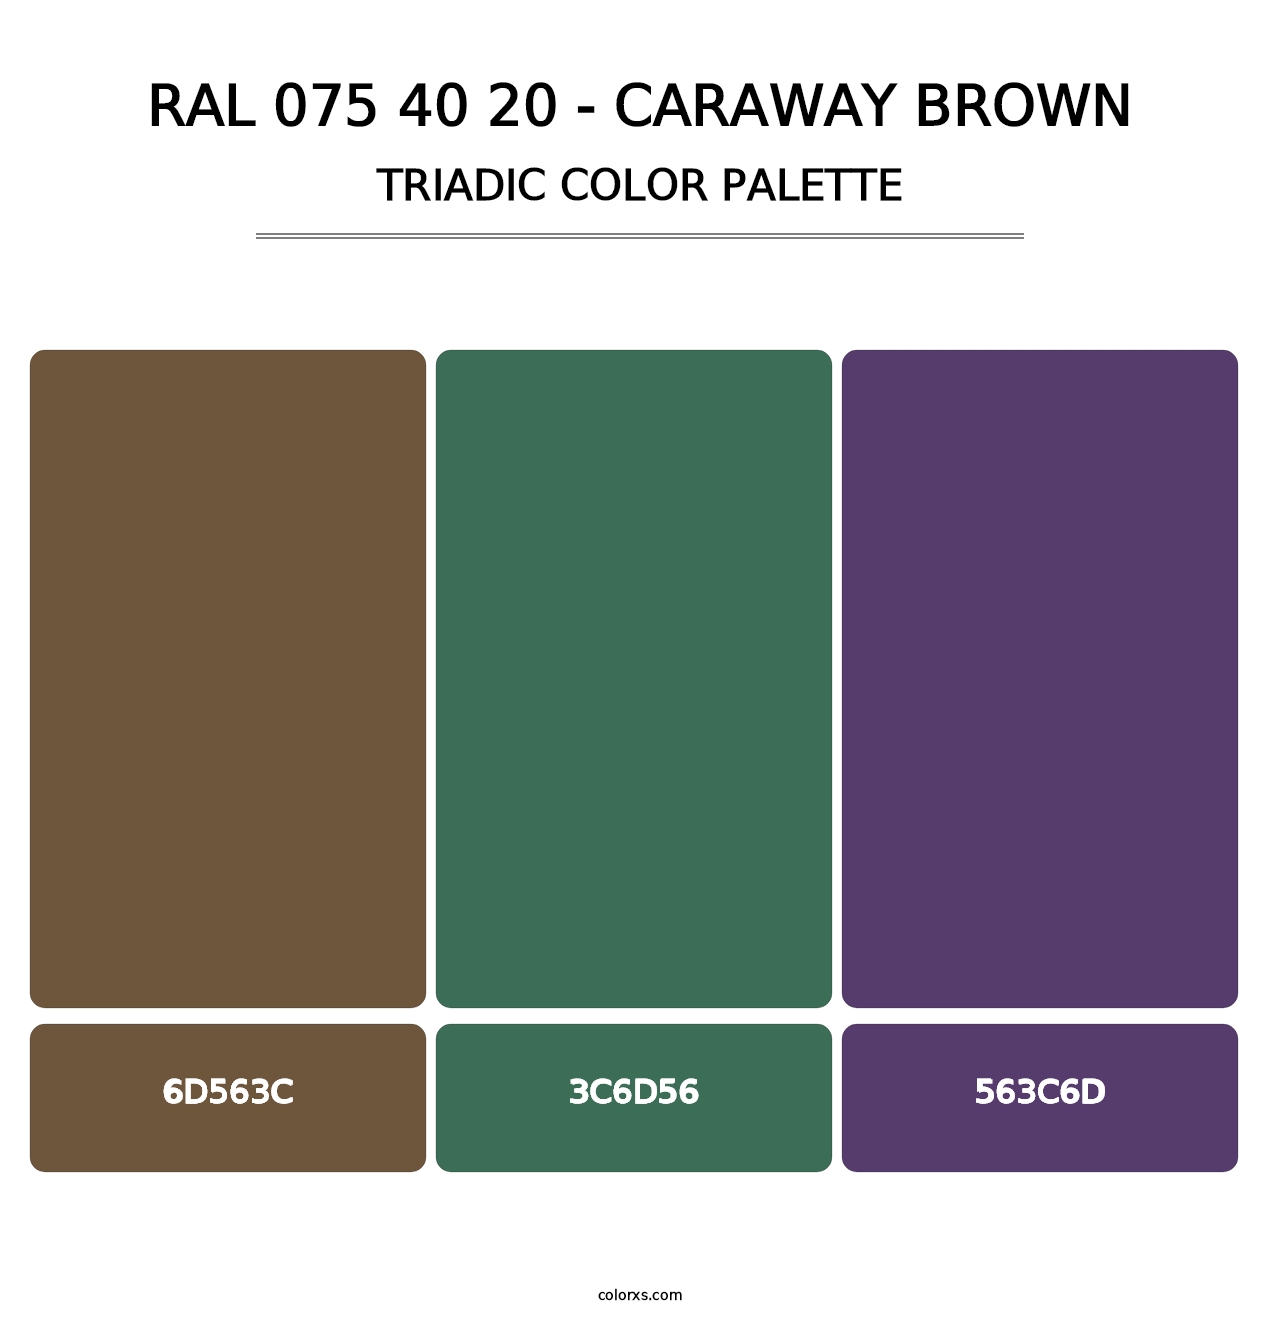 RAL 075 40 20 - Caraway Brown - Triadic Color Palette